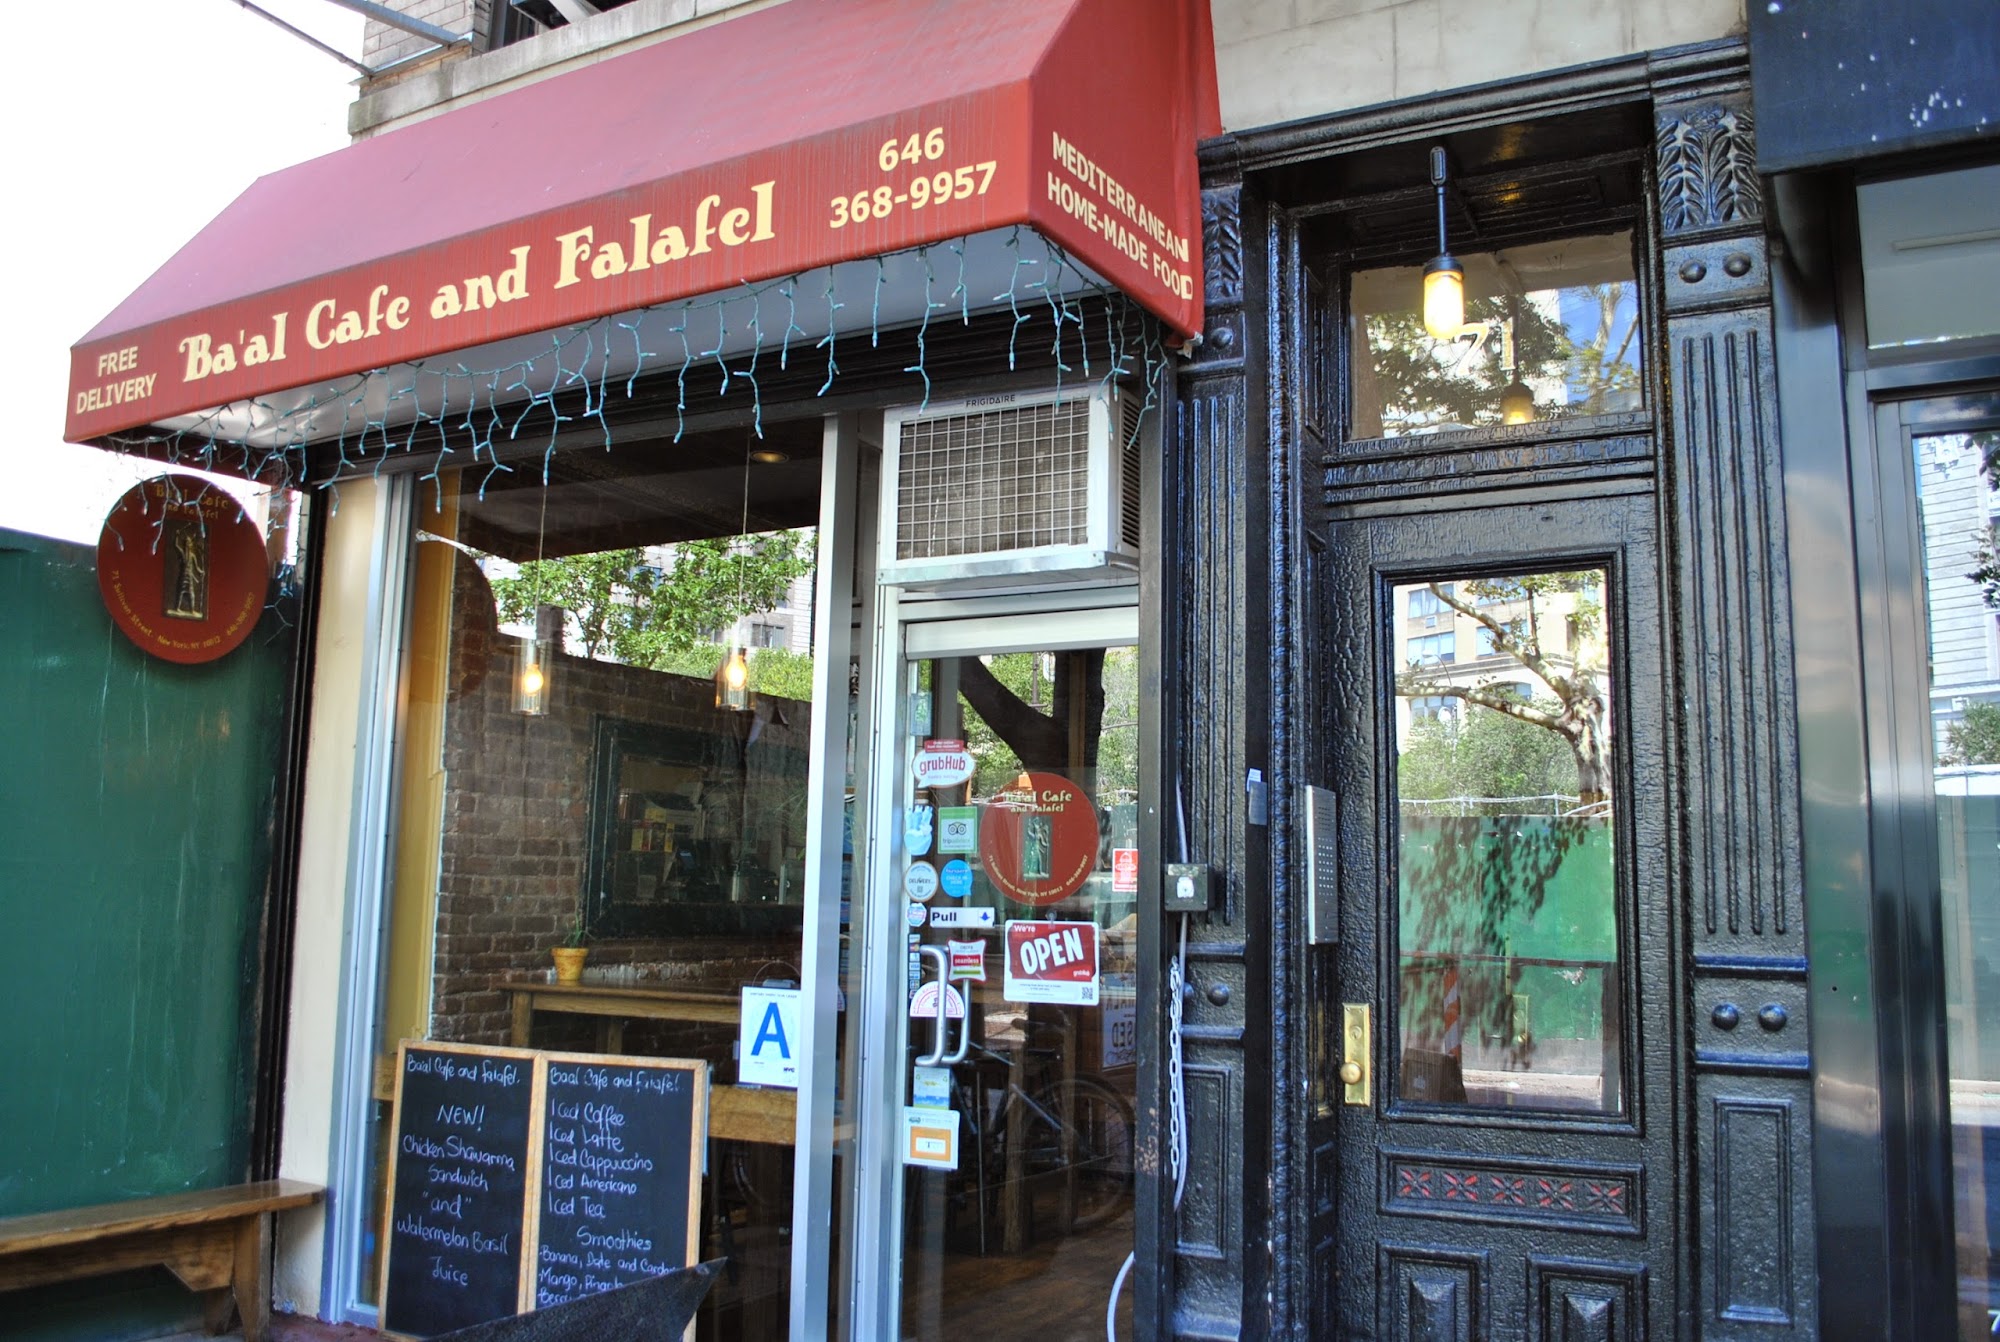 Ba'al Cafe & Falafel